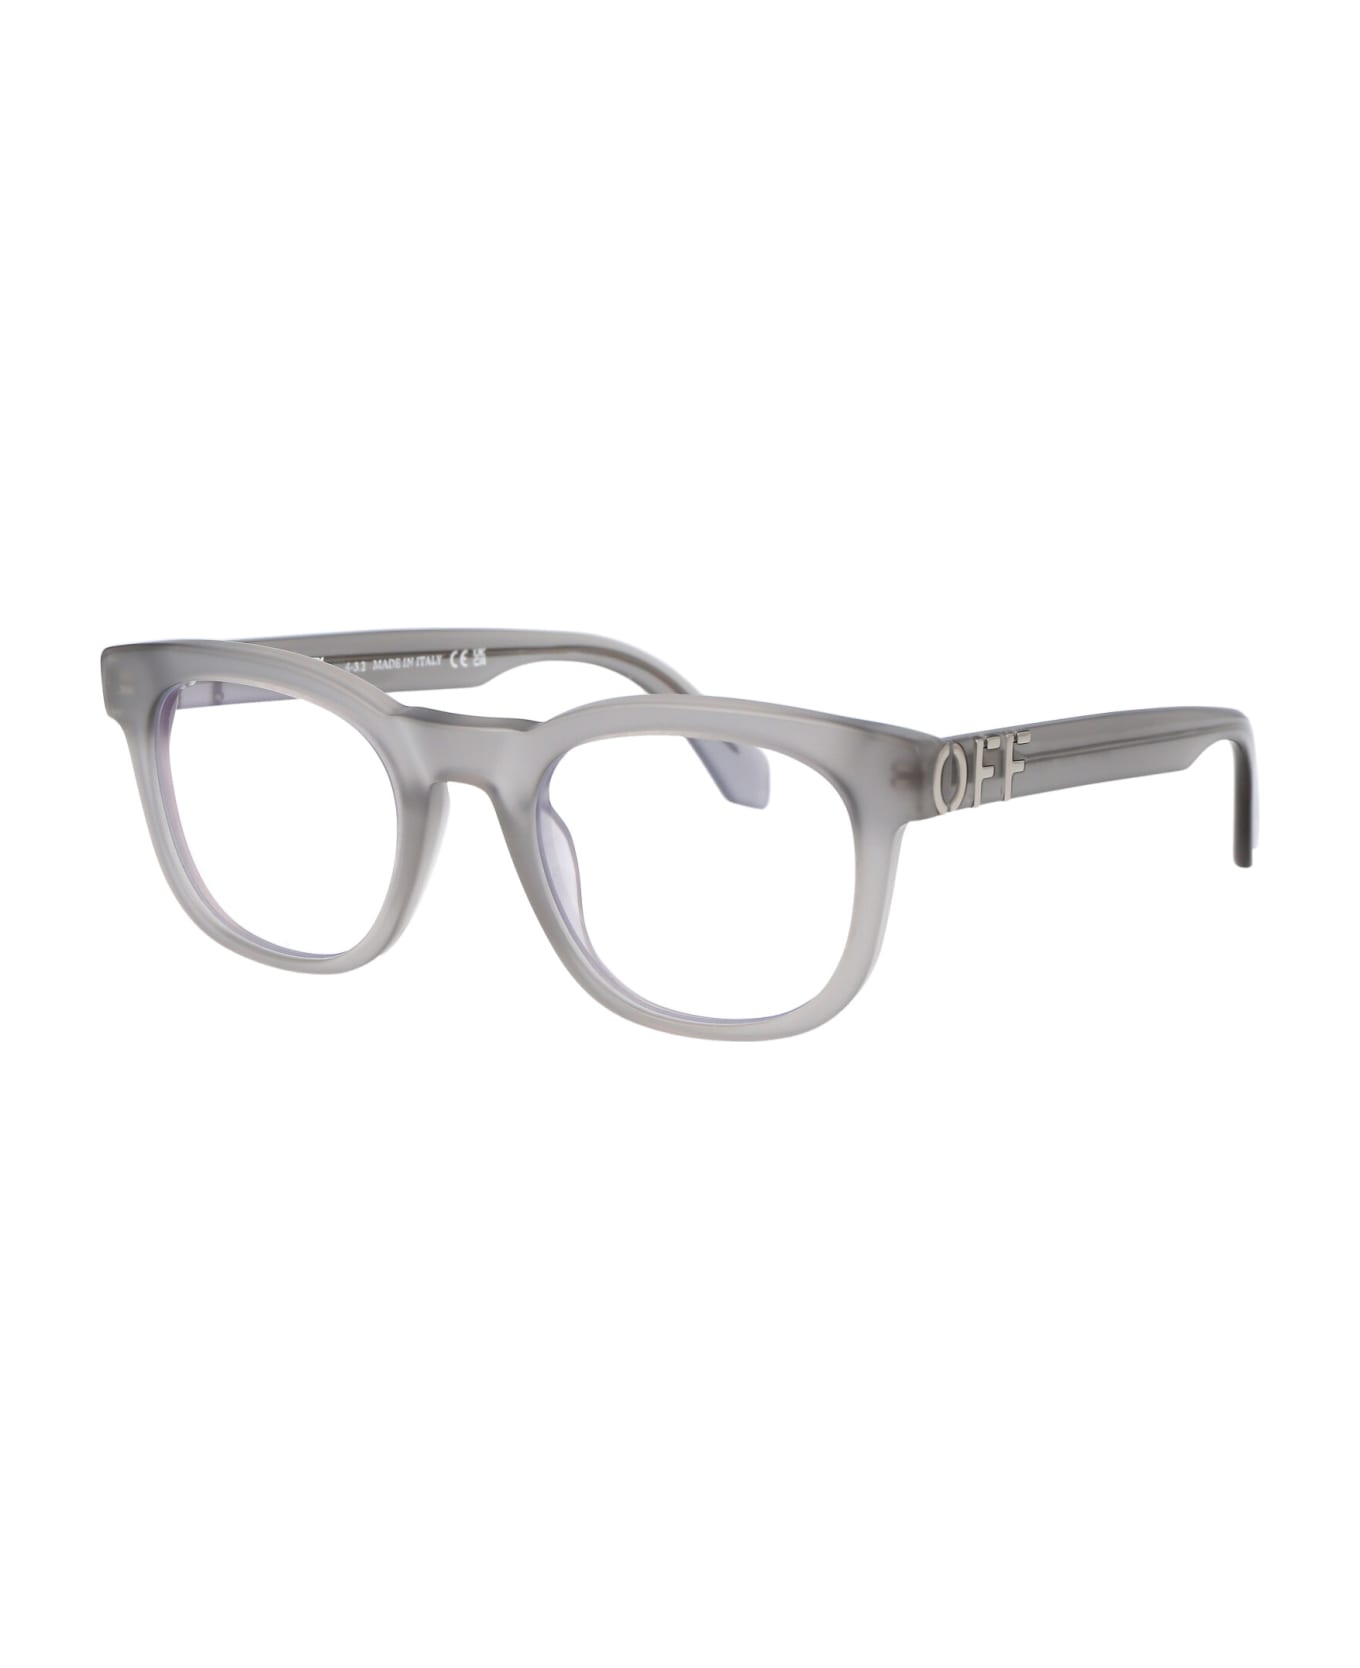 Off-White Optical Style 71 Glasses - 0900 GREY  アイウェア